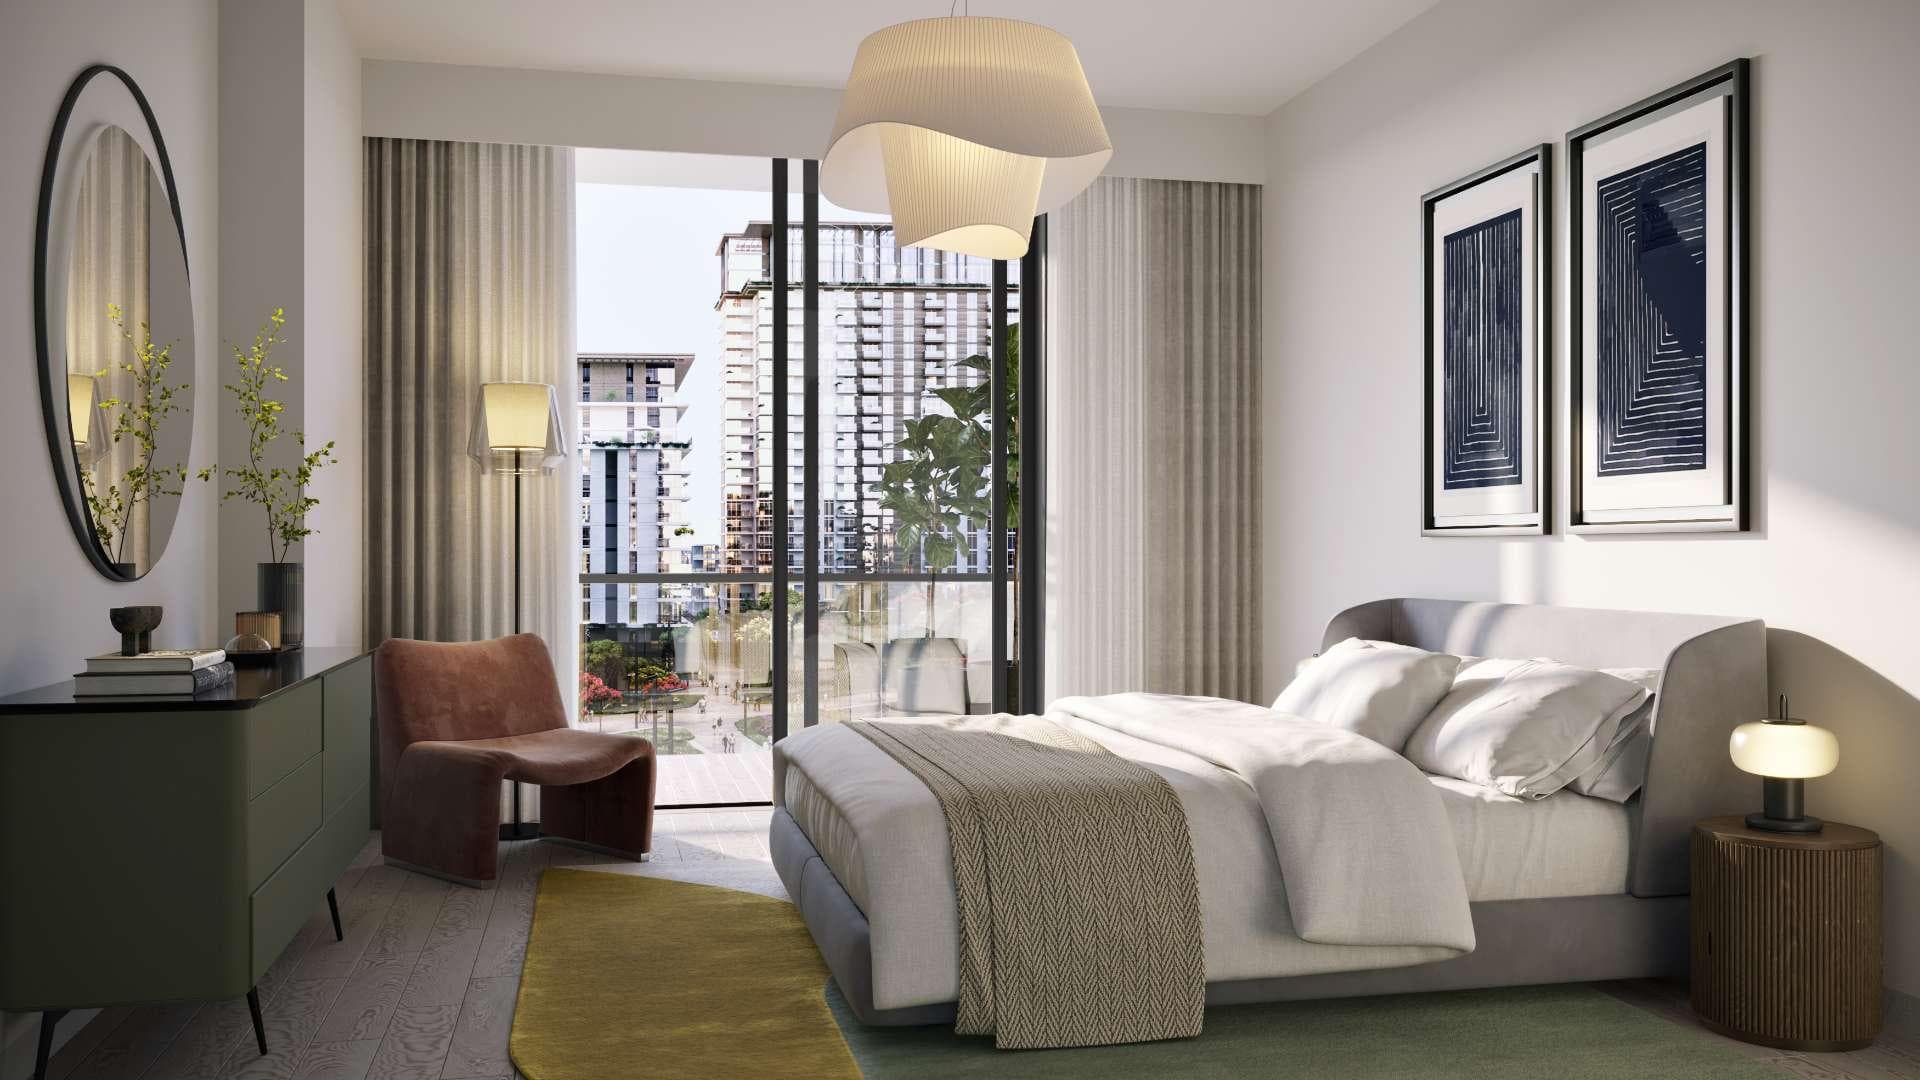 1 Bedroom Apartment For Sale Central Park Lp13893 2241625327ea6e00.jpg